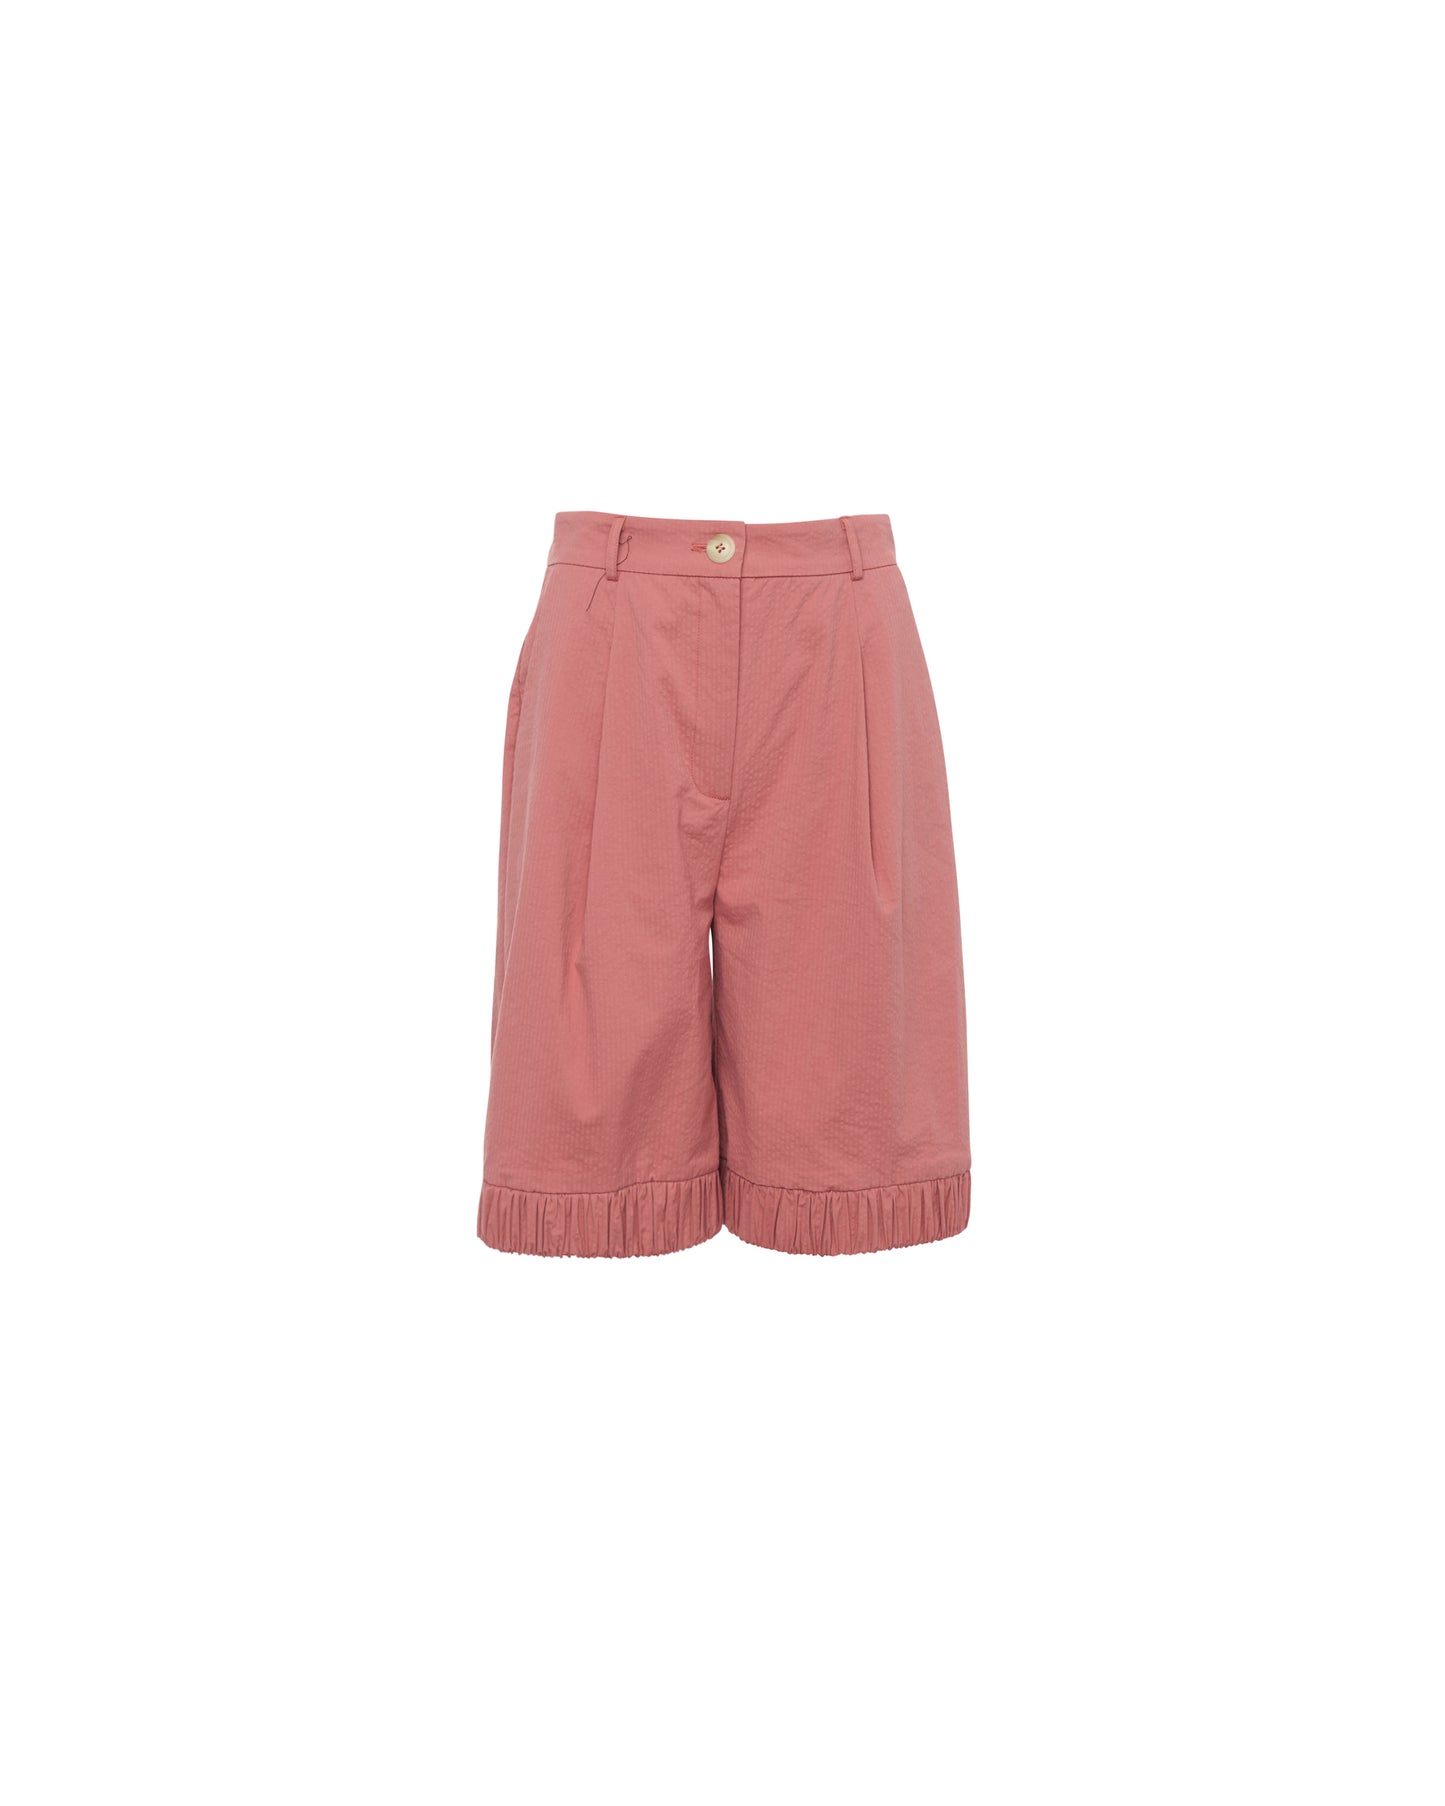 Coral Elastic Shorts